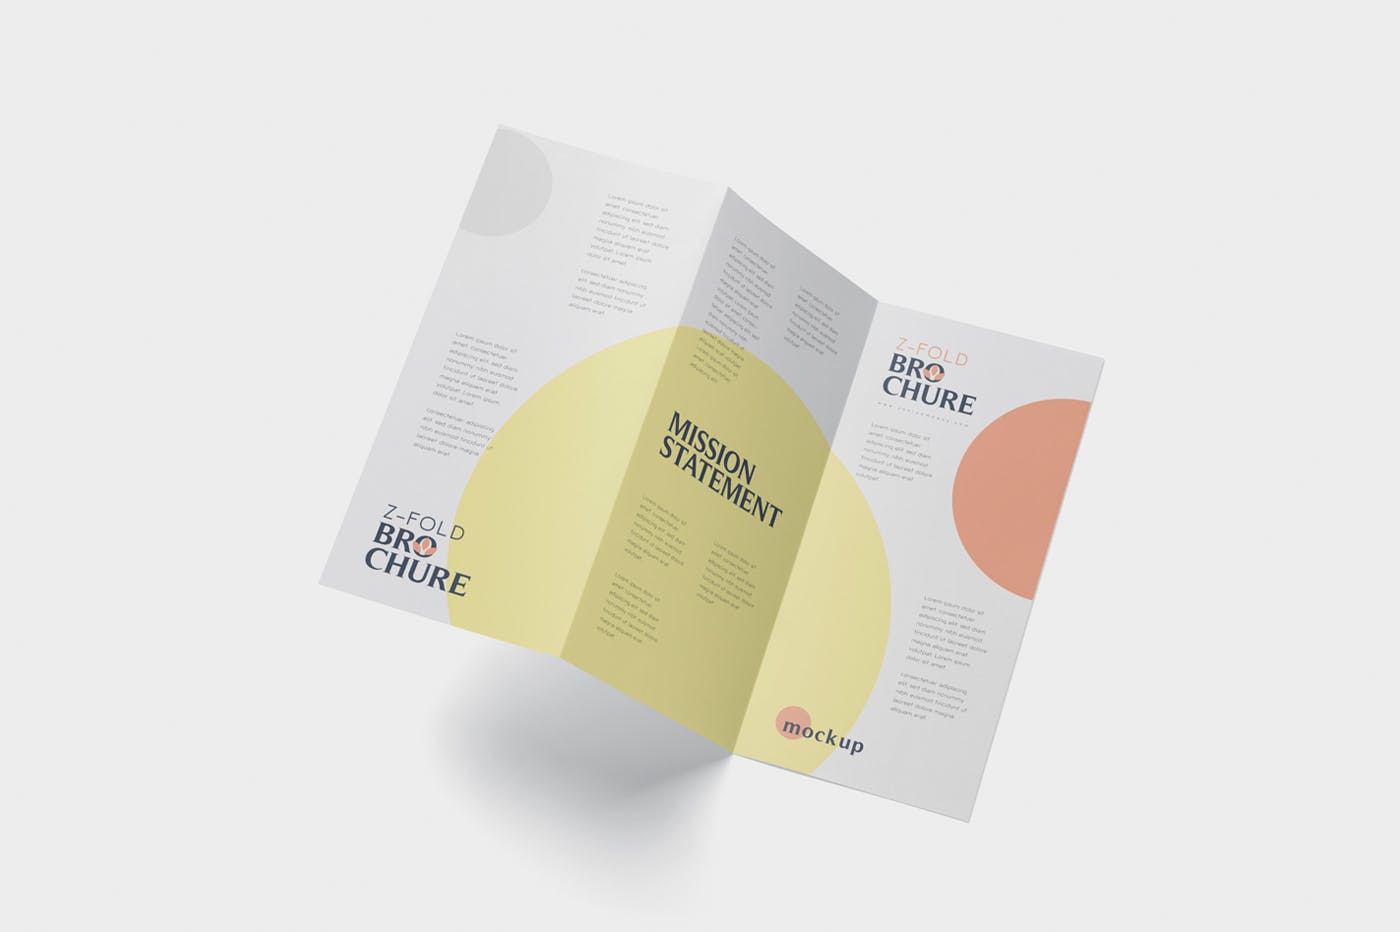 三折页设计风格企业传单/宣传单设计图样机大洋岛精选 DL Z-Fold Brochure Mockup – 99 x 210 mm Size插图3